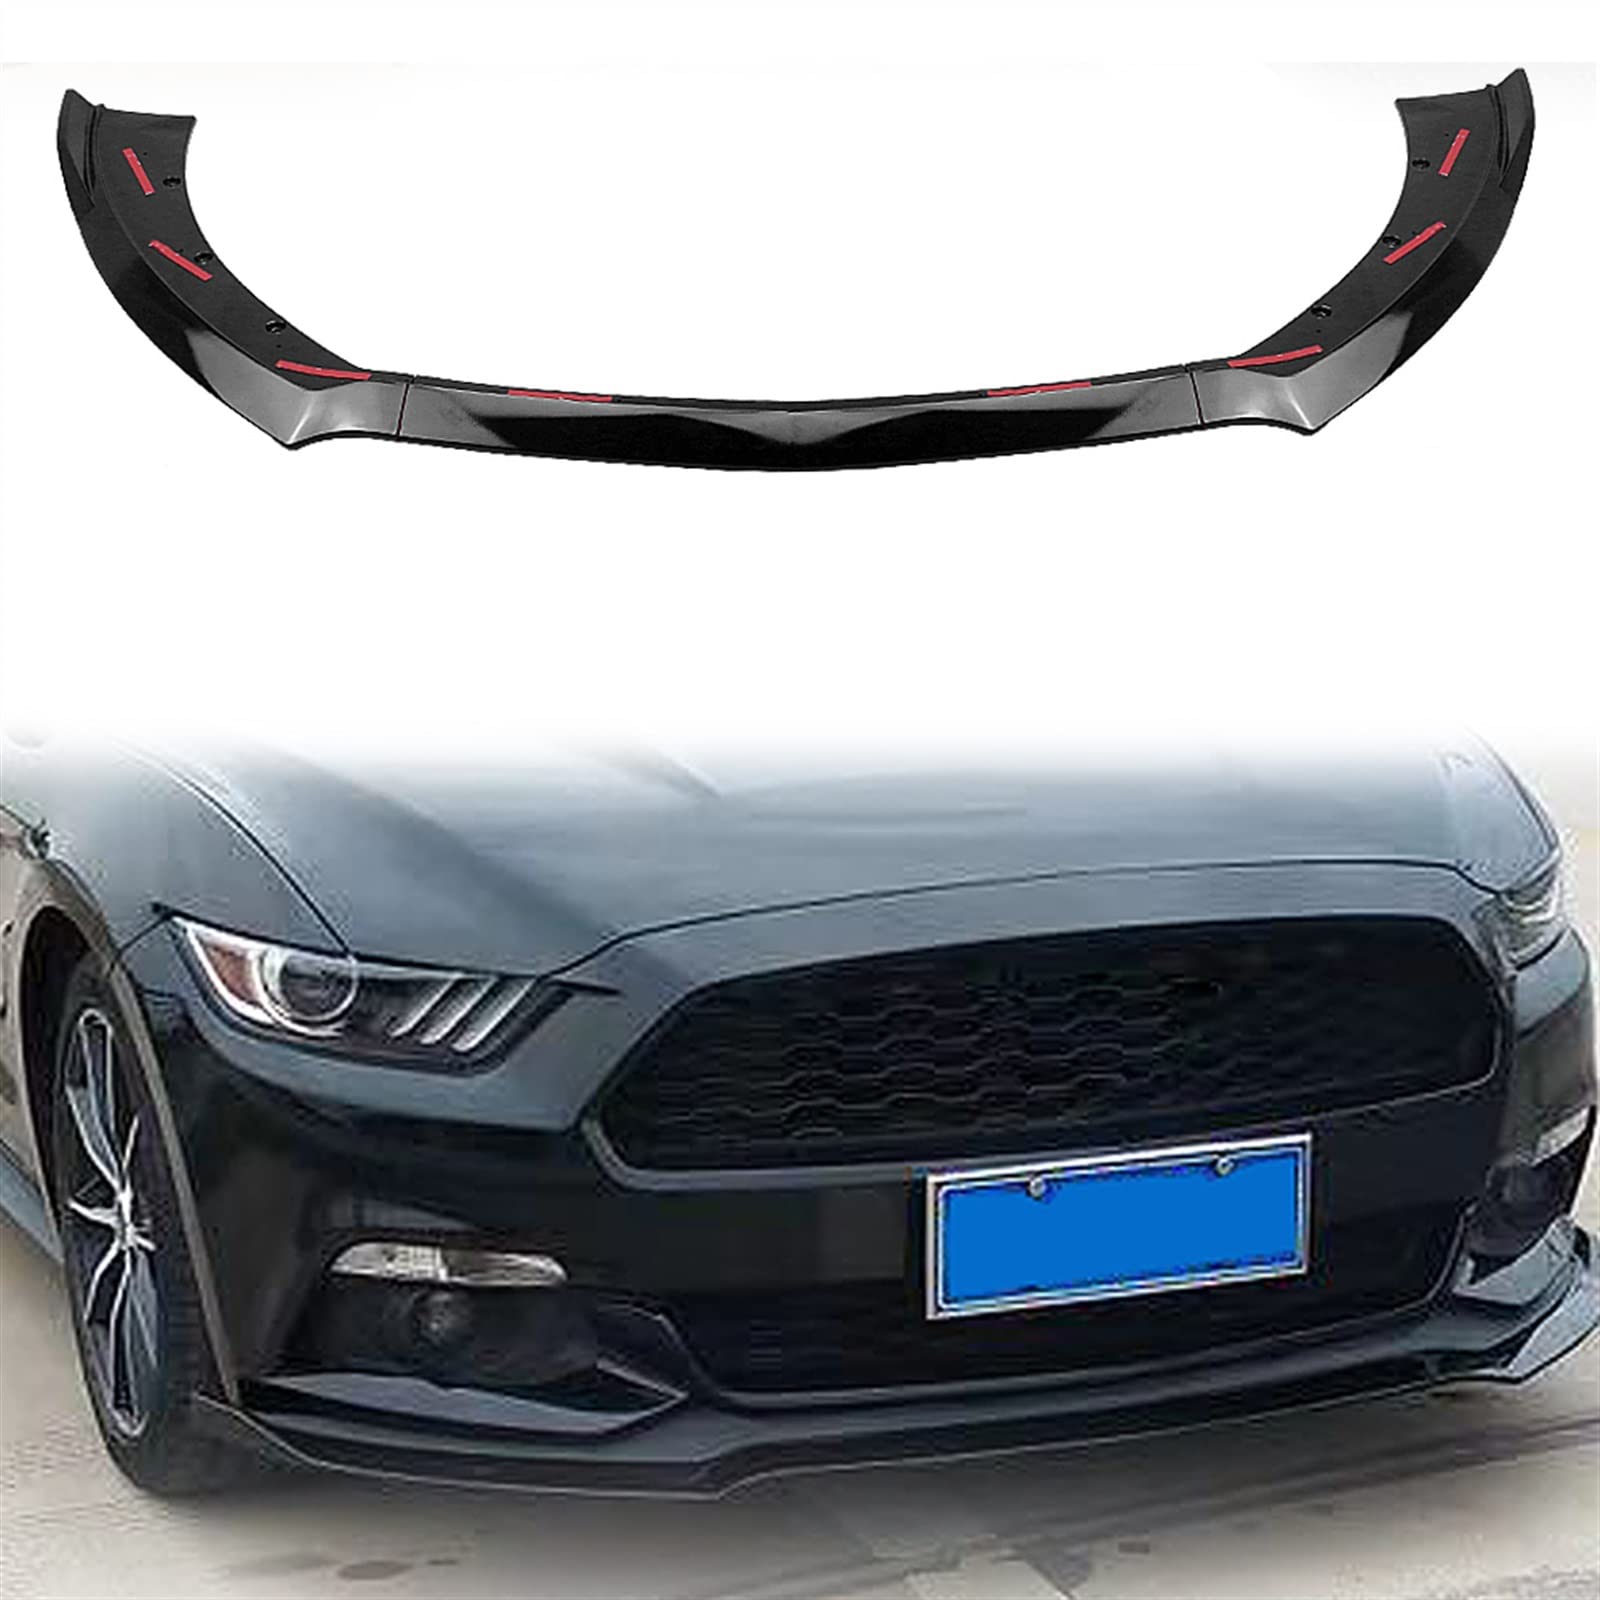 Glänzend Schwarz Frontschürze Spoiler Lippe Für Ford Für Mustang GT 2015-2017 Auto Lower Body Kit Guard Plate Splitter Lippe Board Blade von ECLAY